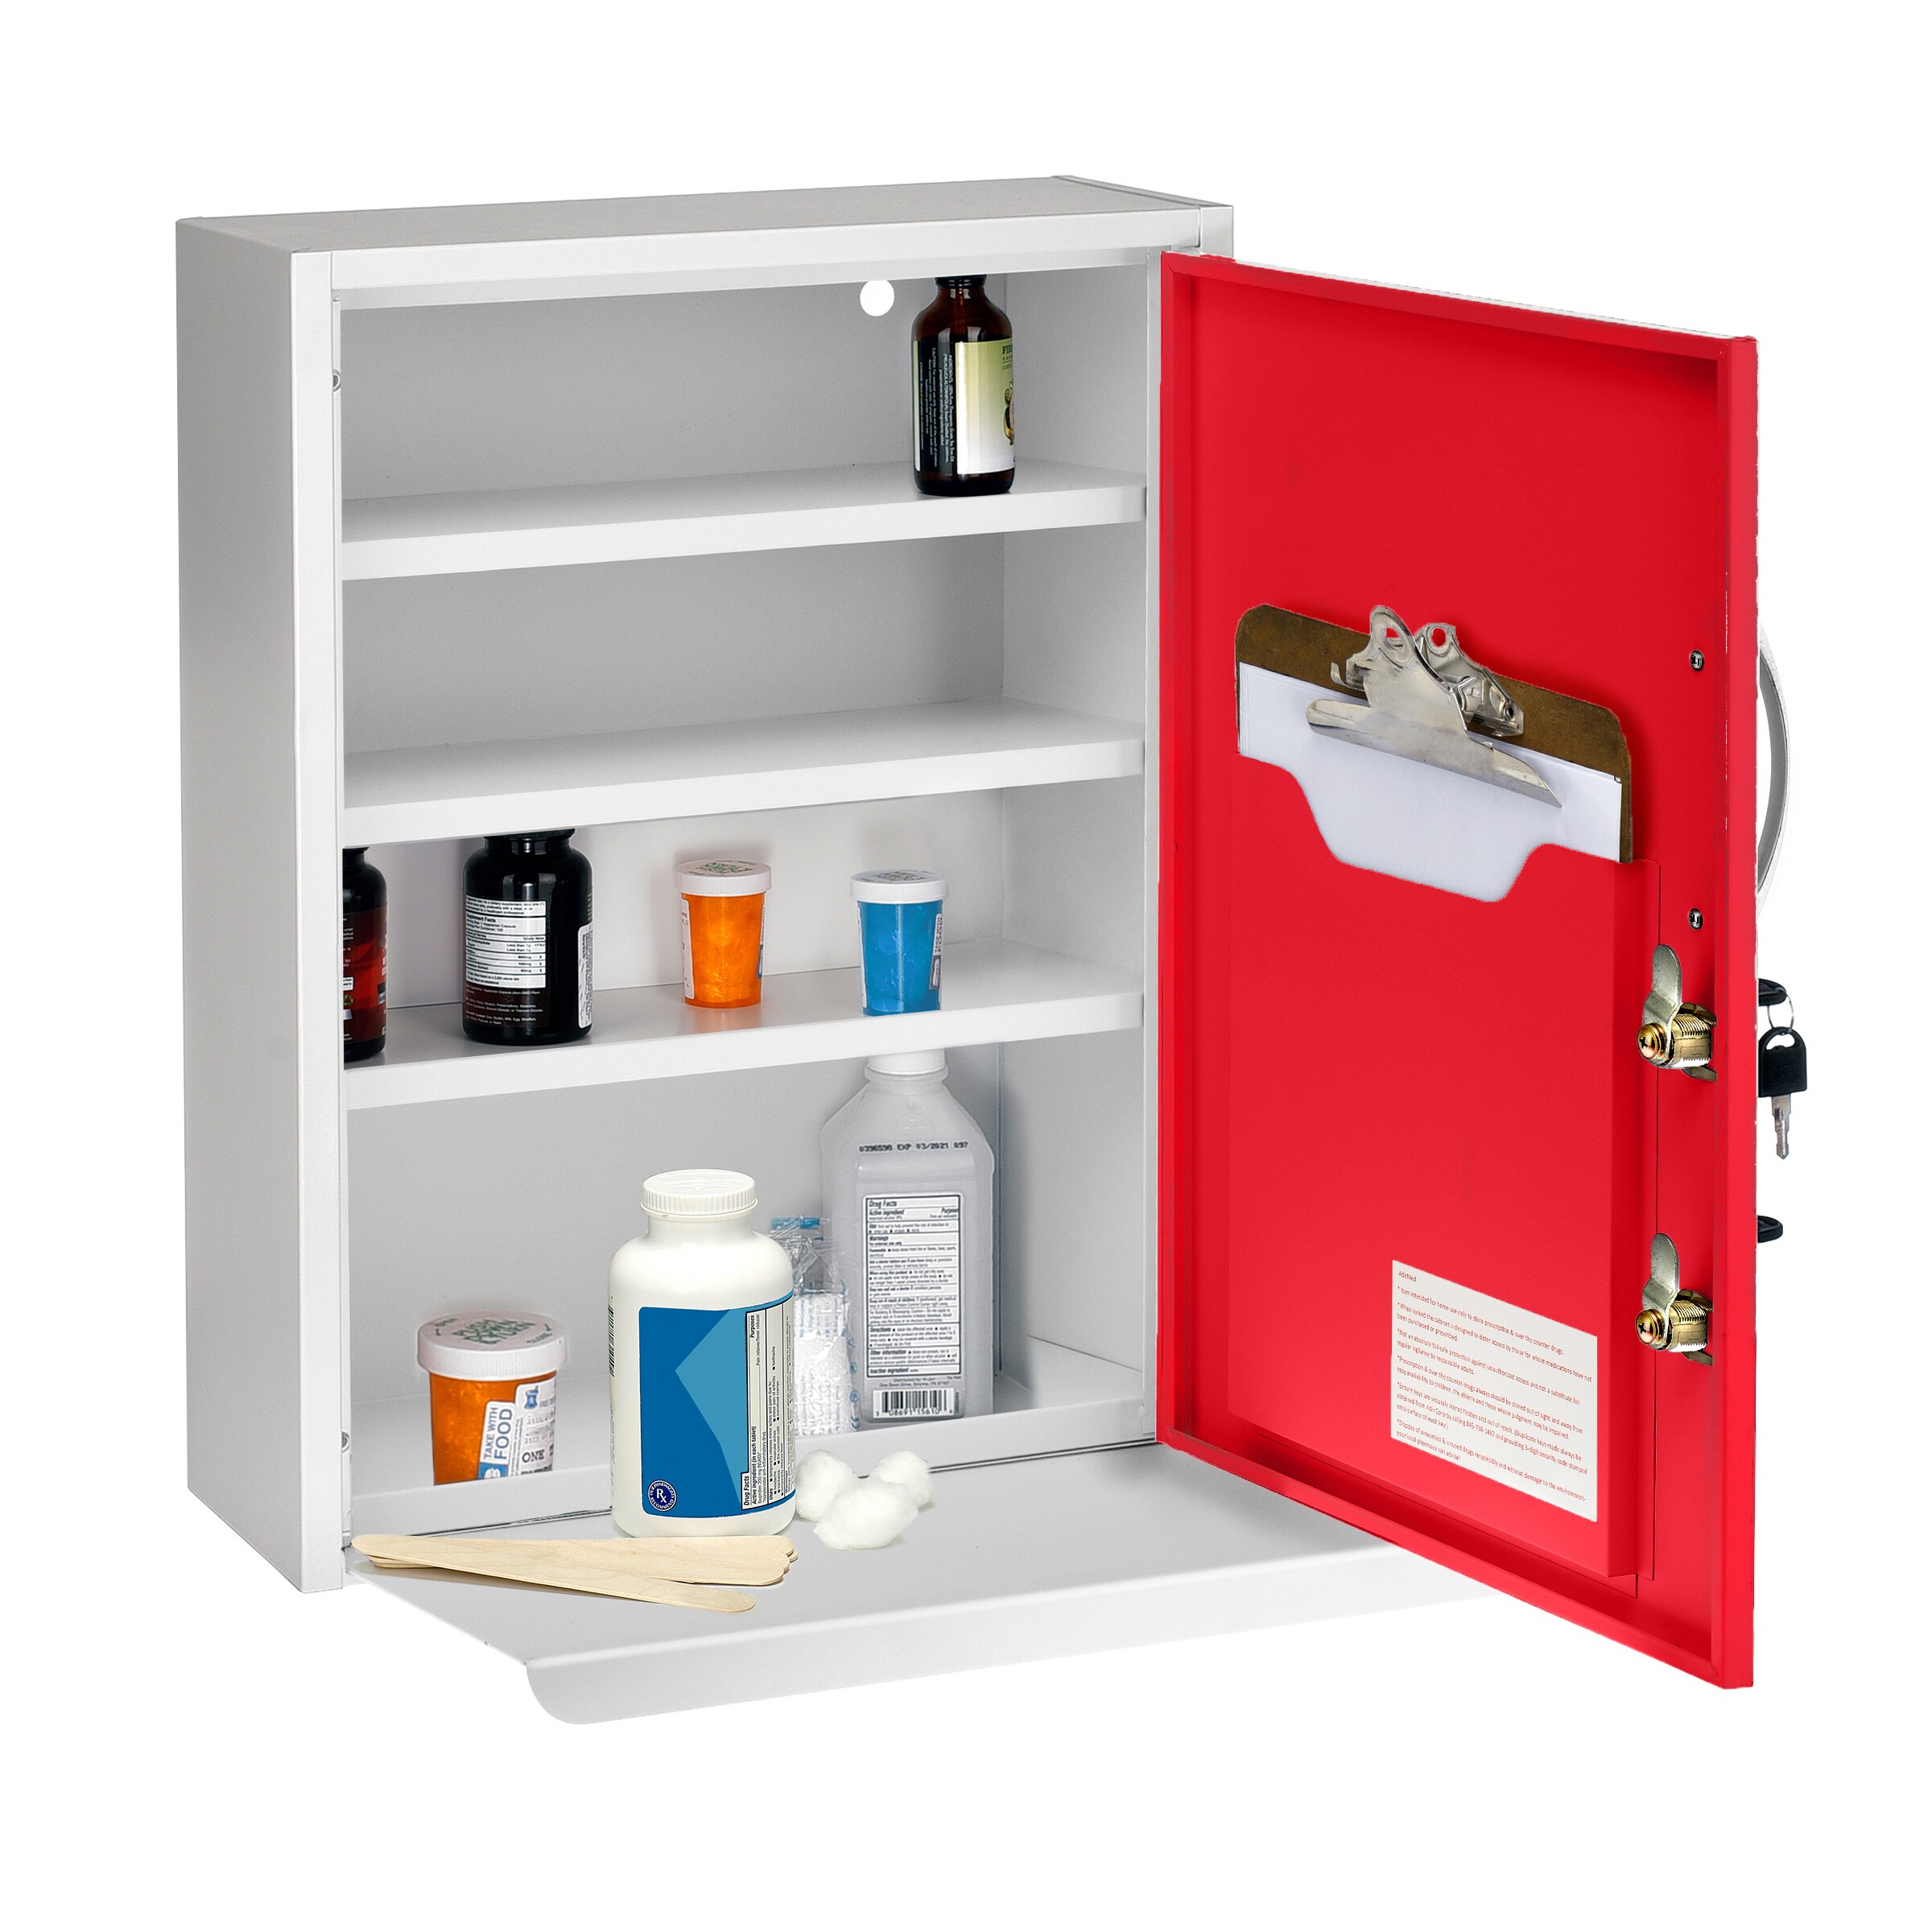 Medicine storage box ensuring child safety